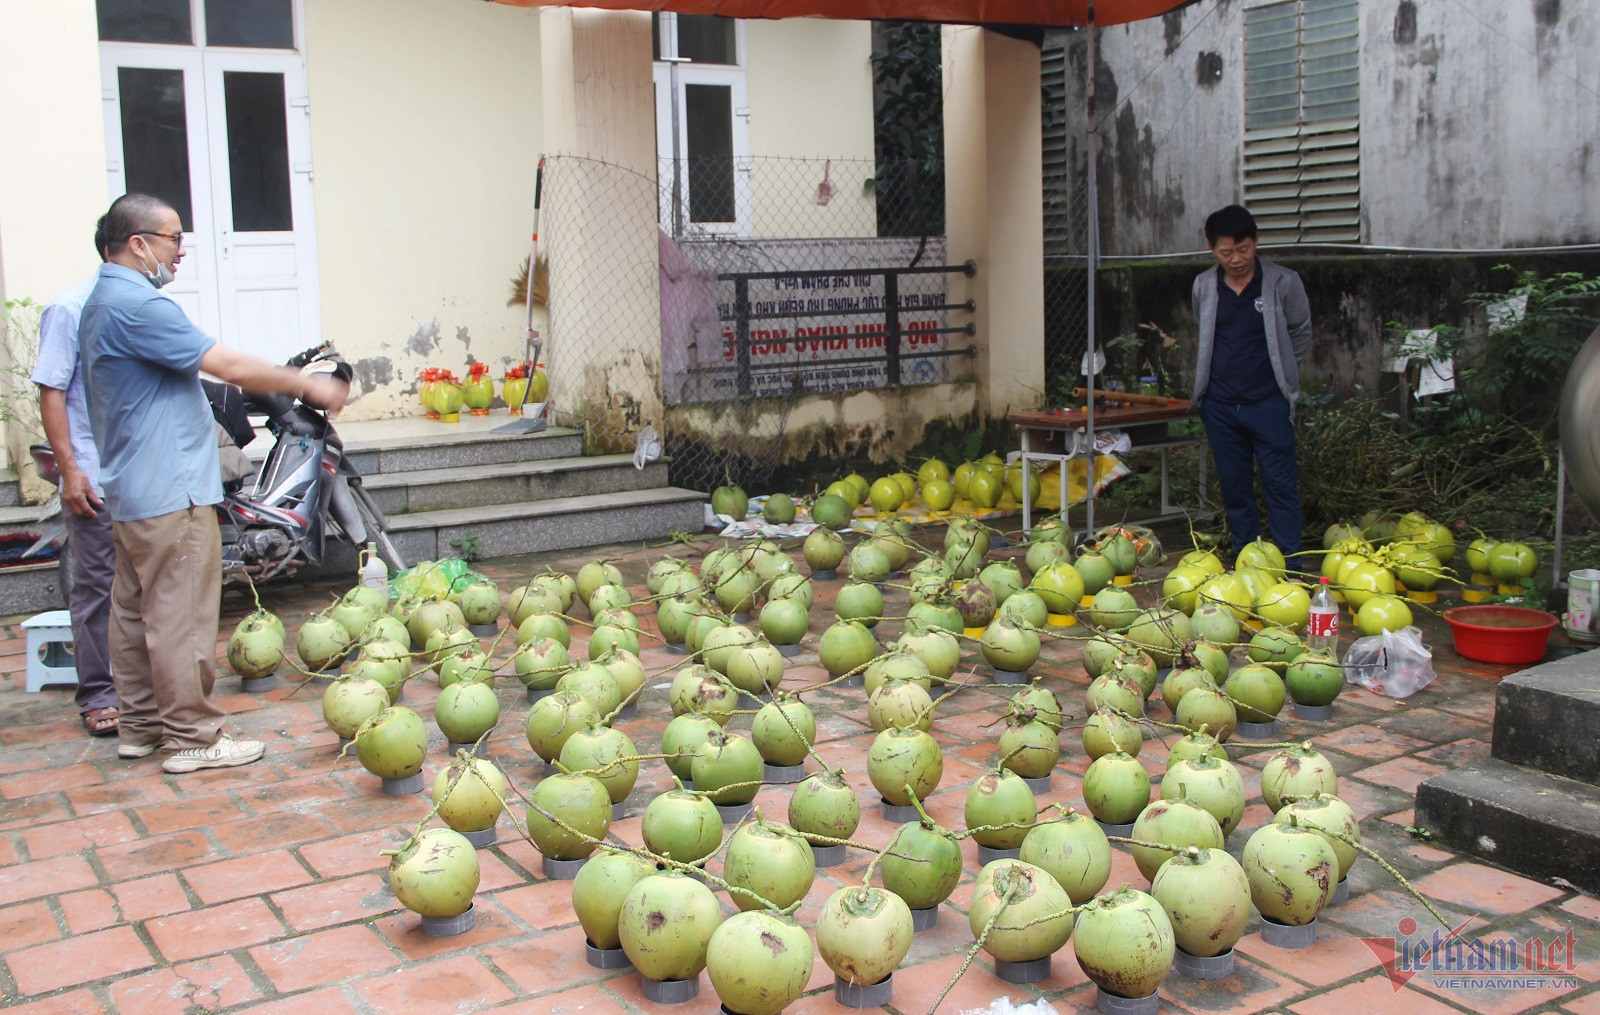 Ông Nguyễn Tiến Dũng lựa chọn những quả dừa không trầy xước, cân đối để thi triển bút pháp.